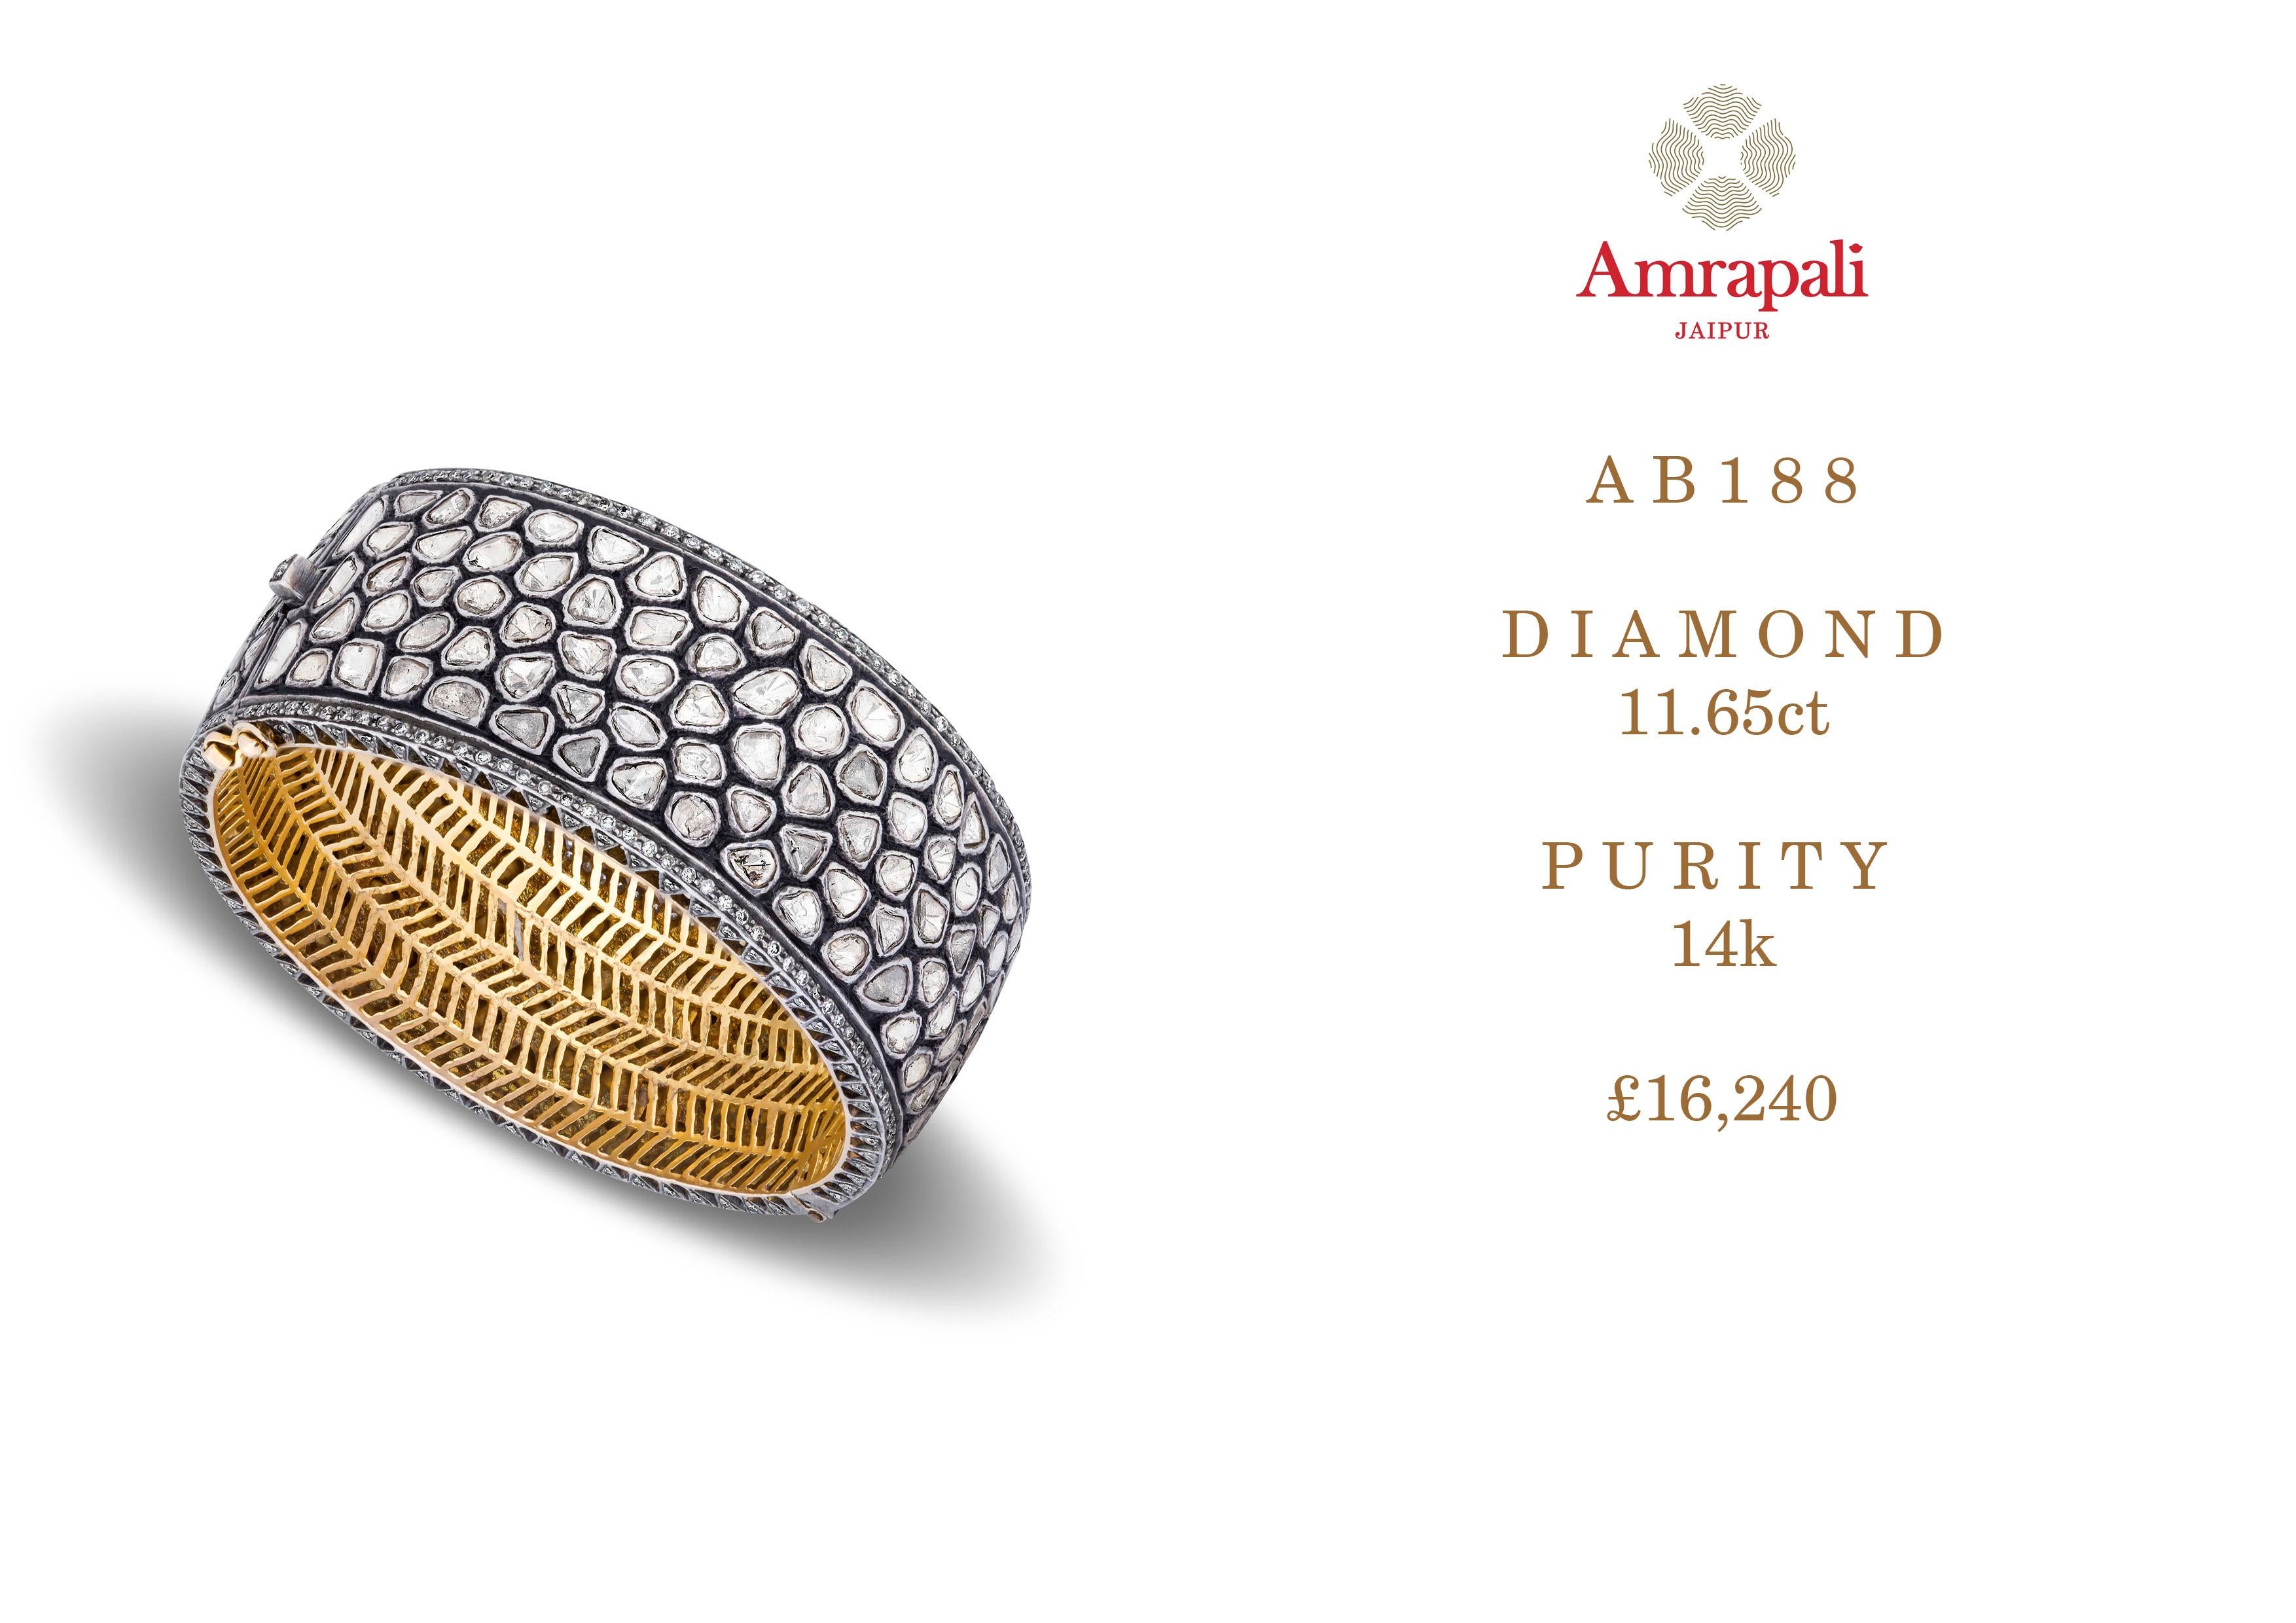 Amrapali Jewels 14k gold & Polki diamond bangle 

Diamond weight - 11.65ct
Size - 5.8cm
